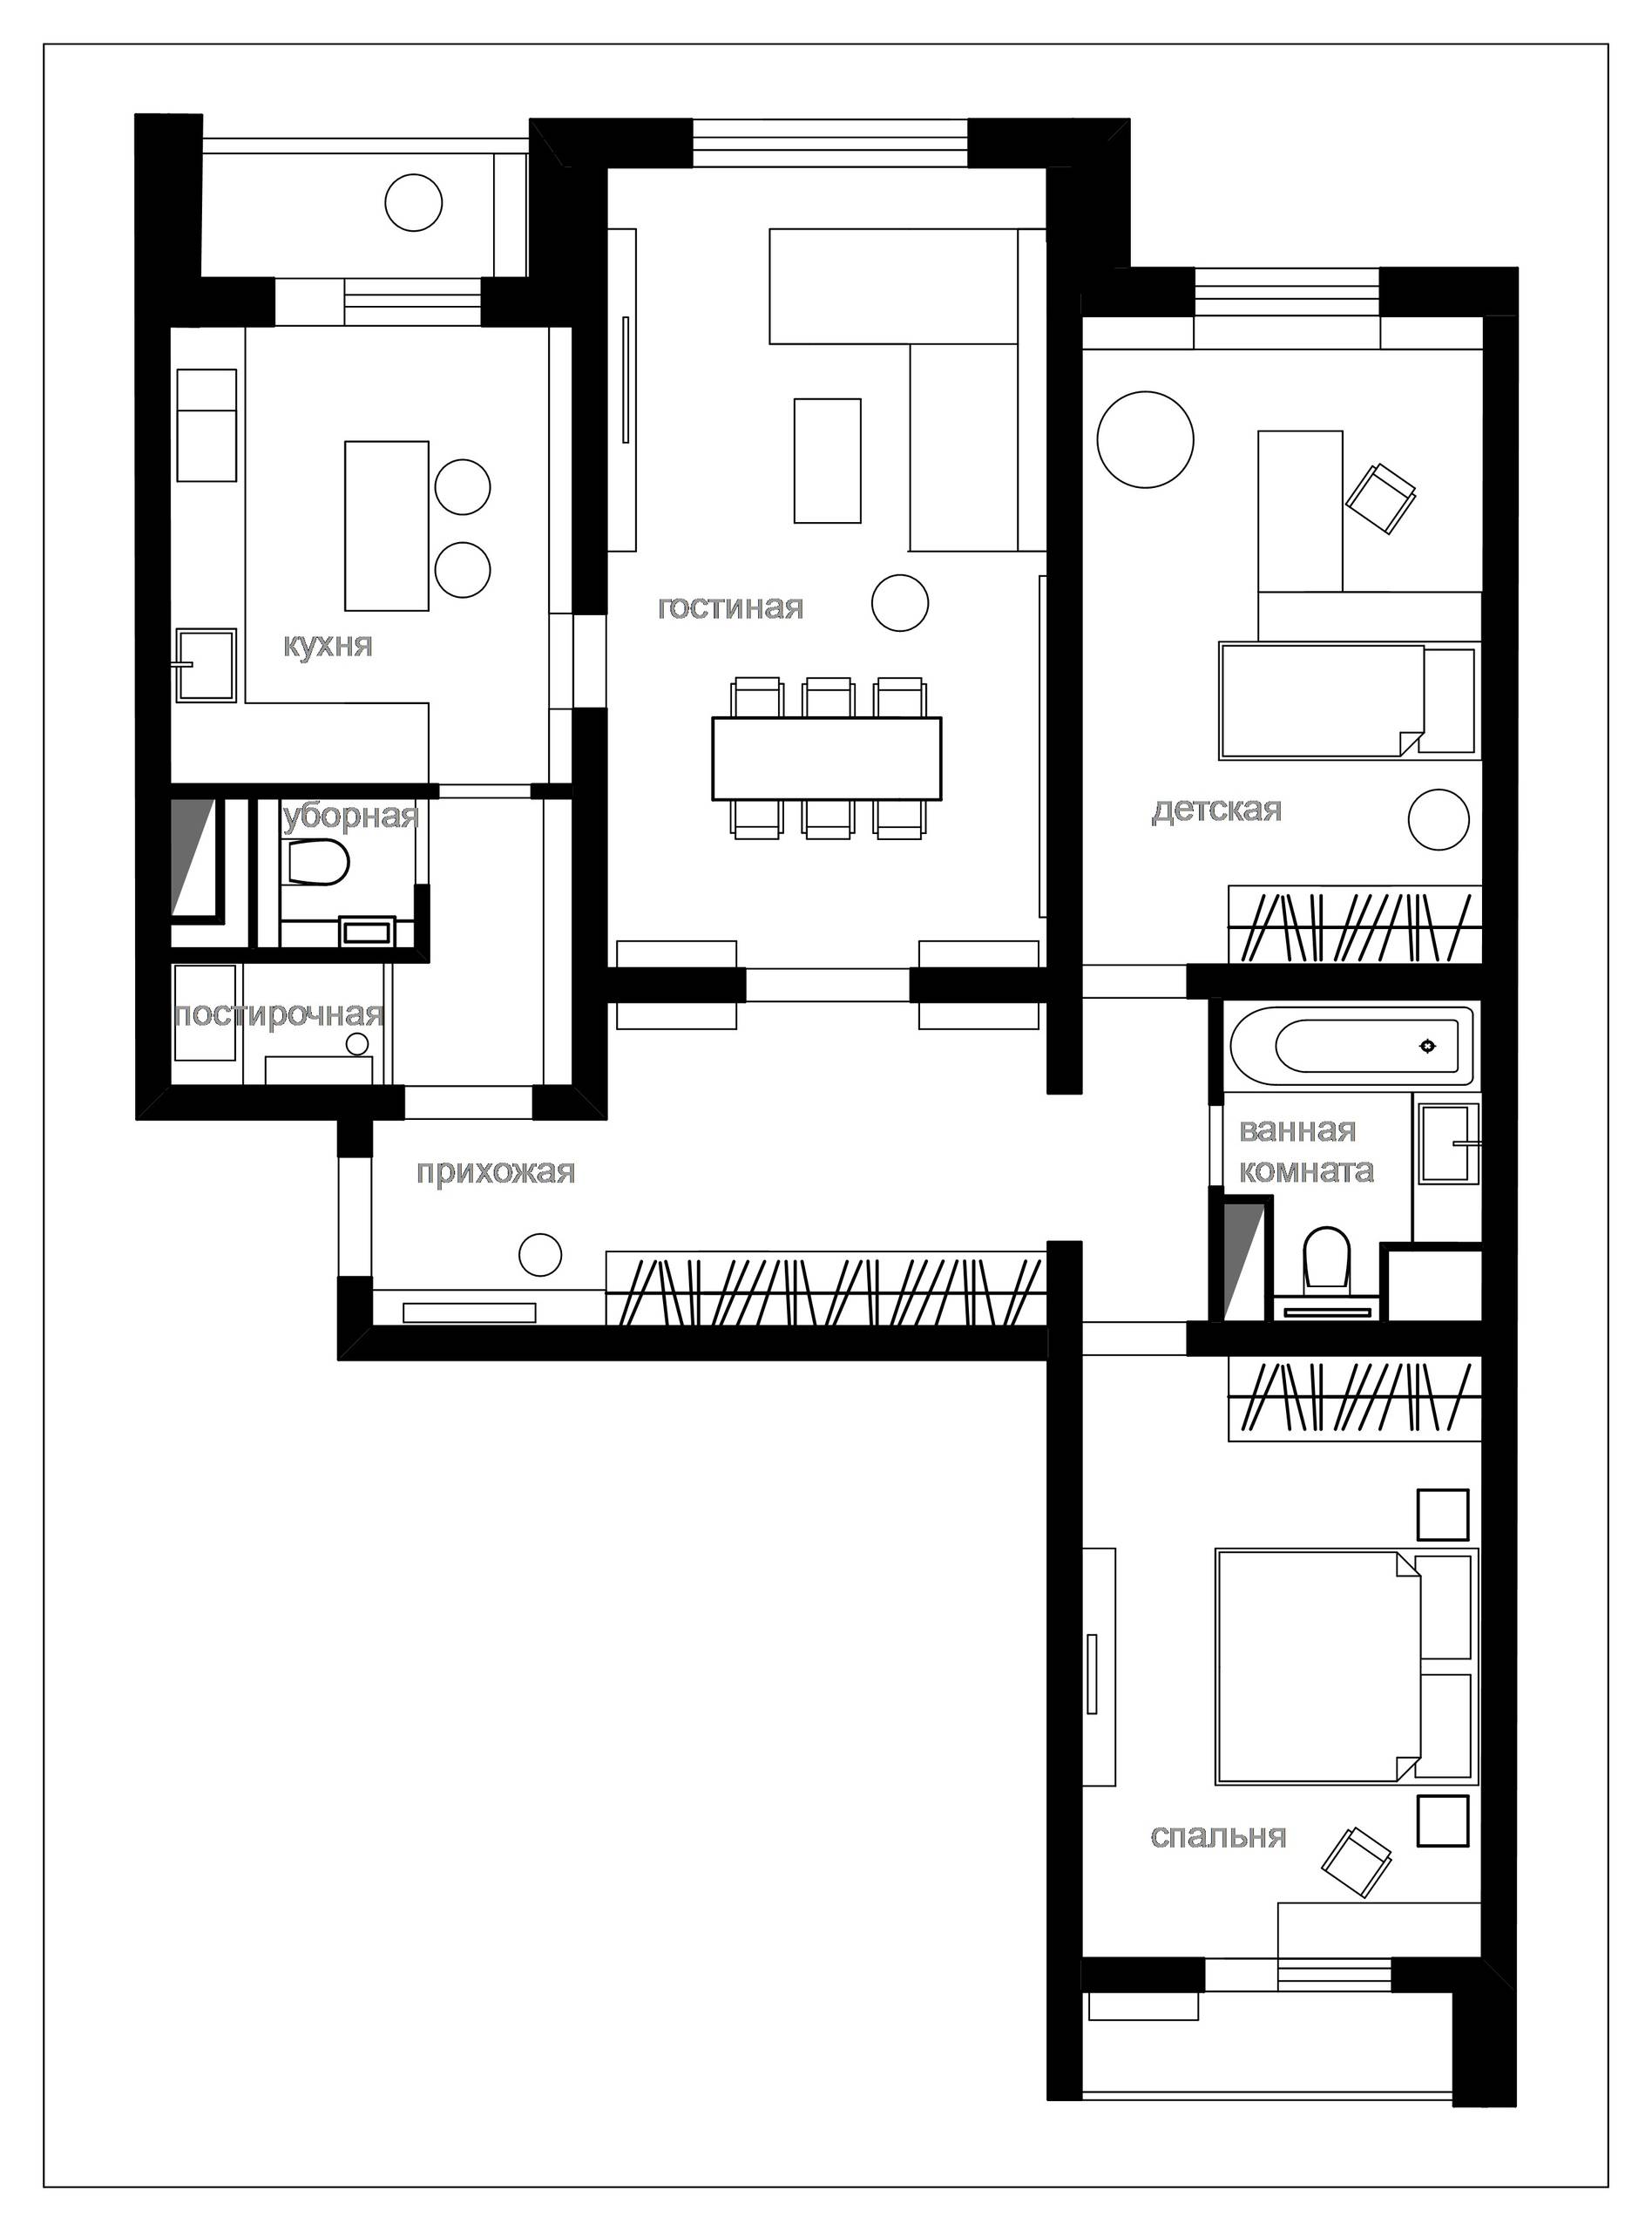 Ремонт квартир в домах серии П-3М, перепланировка квартир